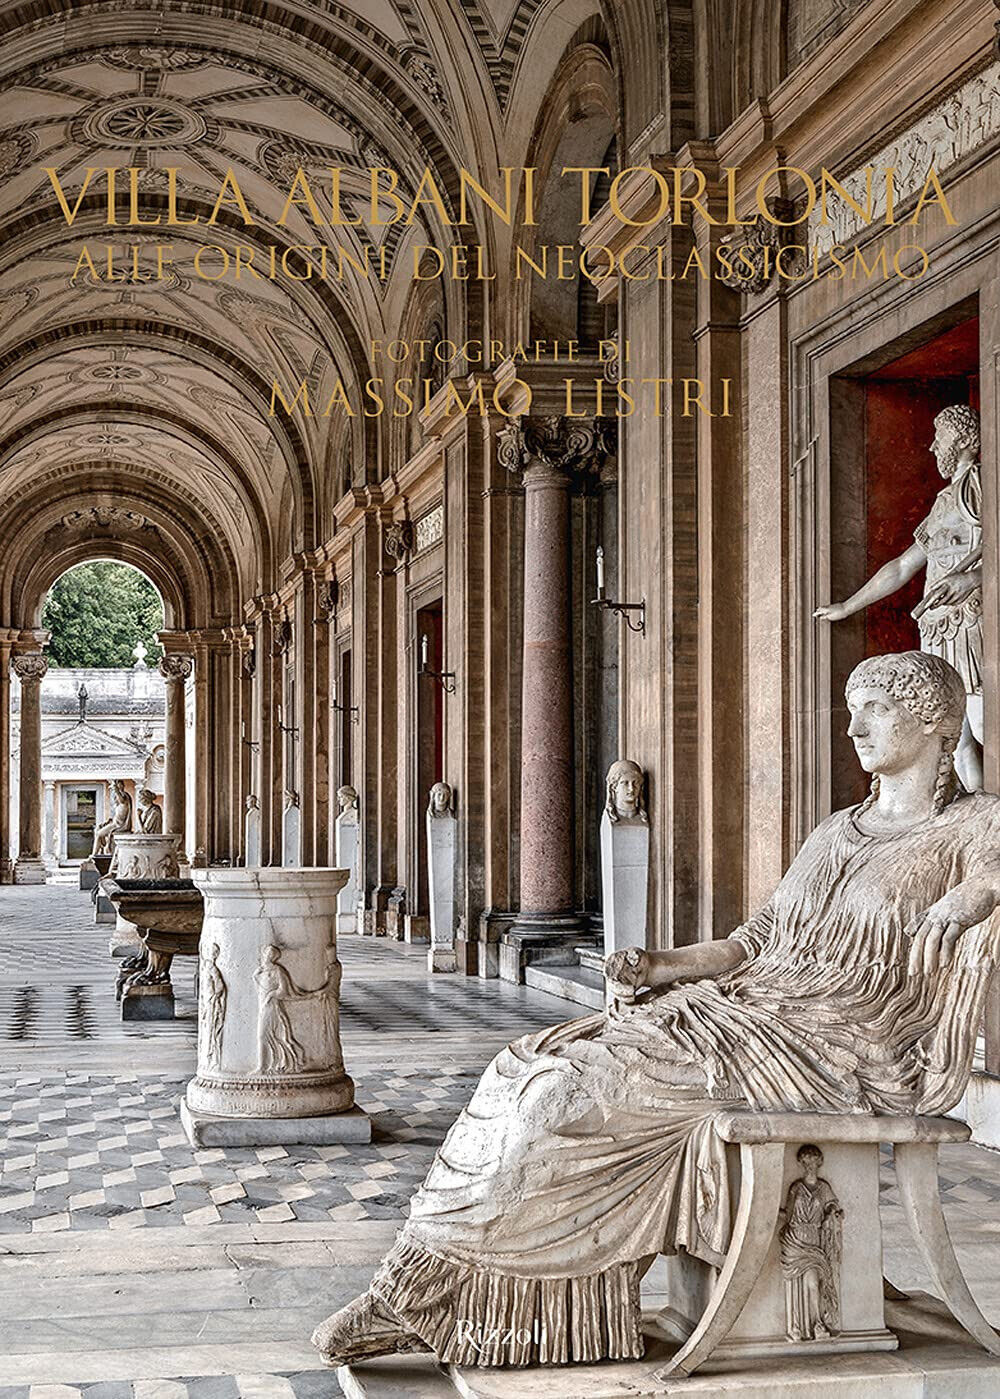 Villa Albani Torlonia. Alle origini del Neoclassicismo. Ediz. illustrata - 2021 libro usato